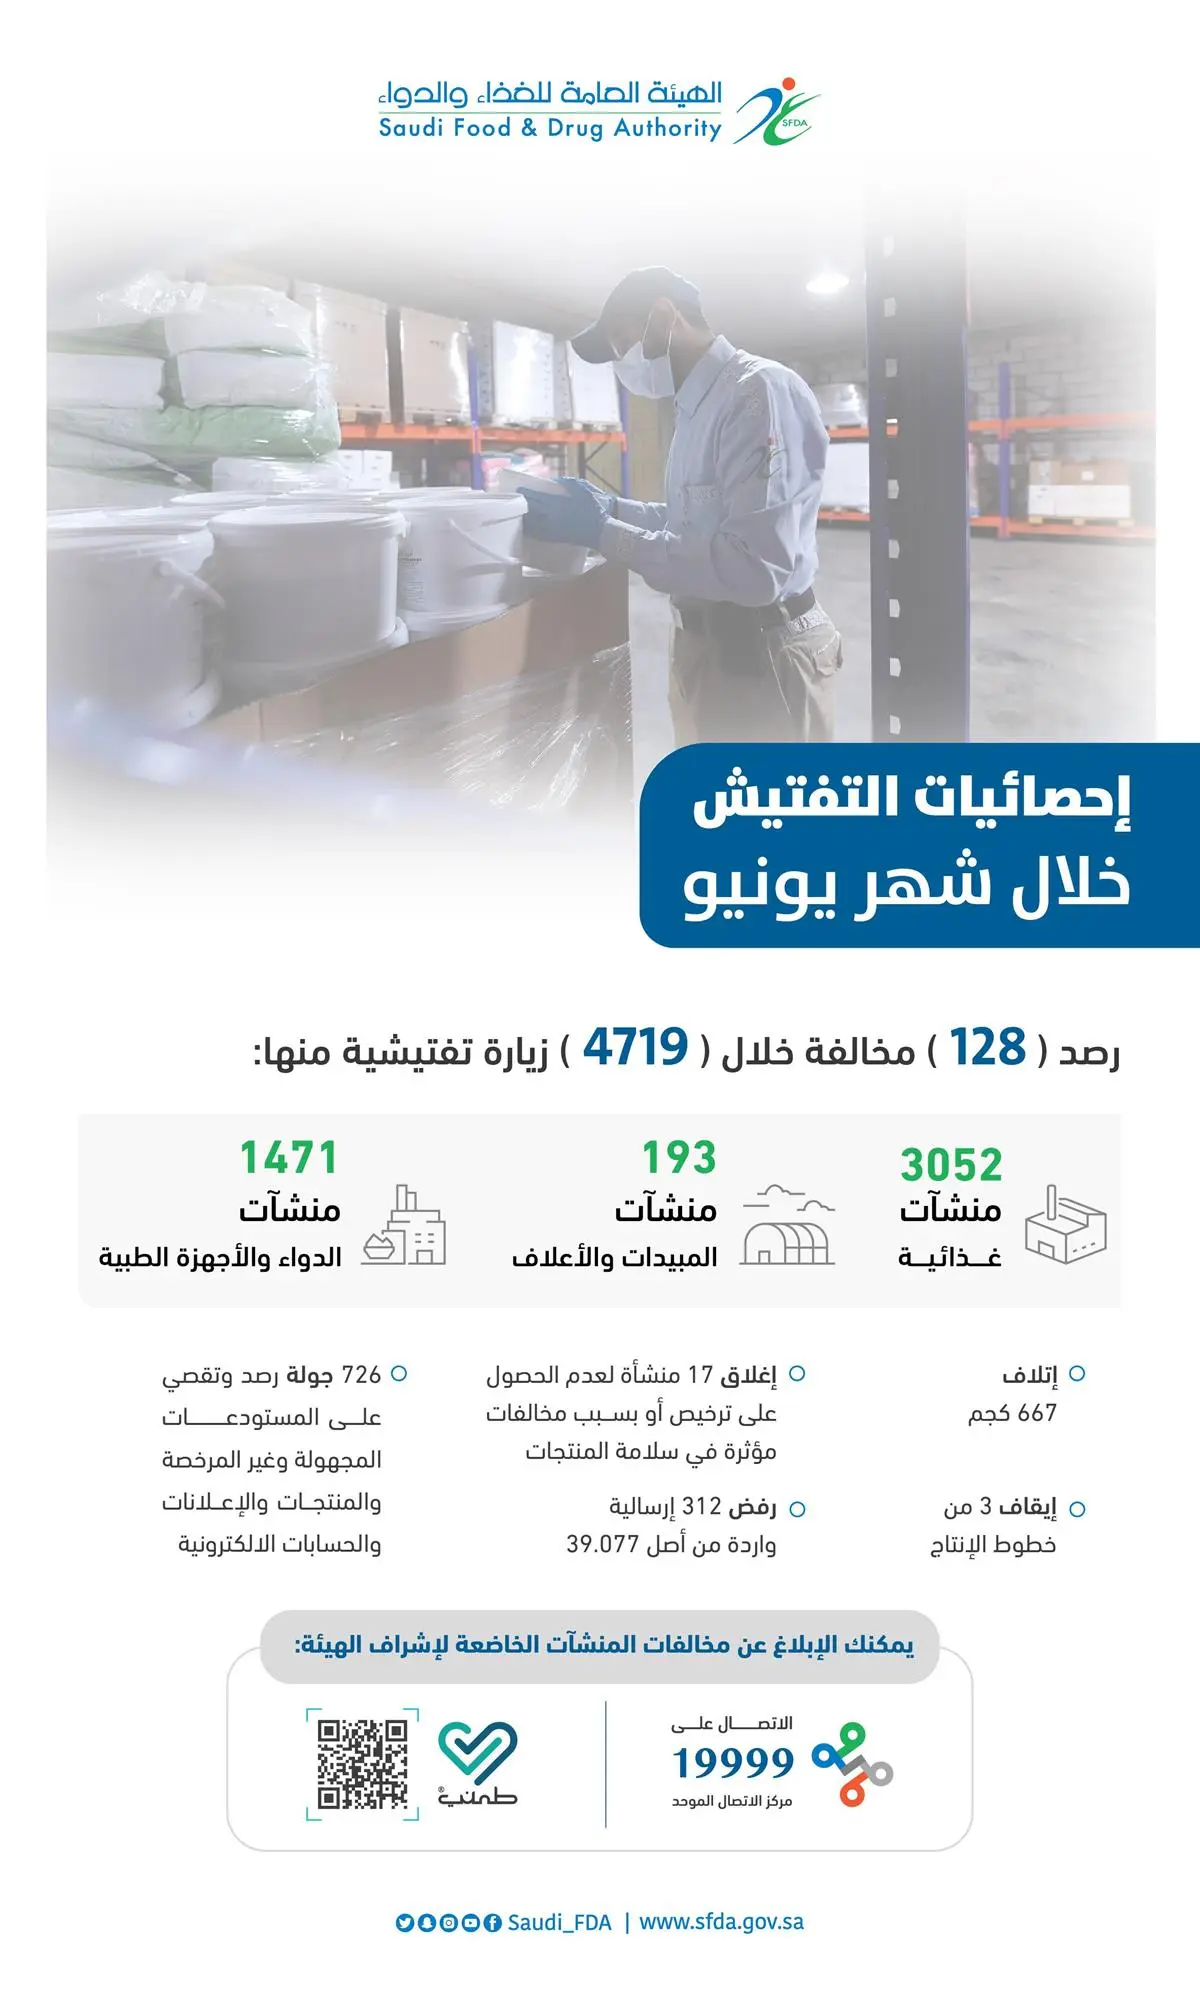 الغذاء والدواء": رصد 128 مخالفة خلال 4719 زيارة تفتيشية في شهر يونيو